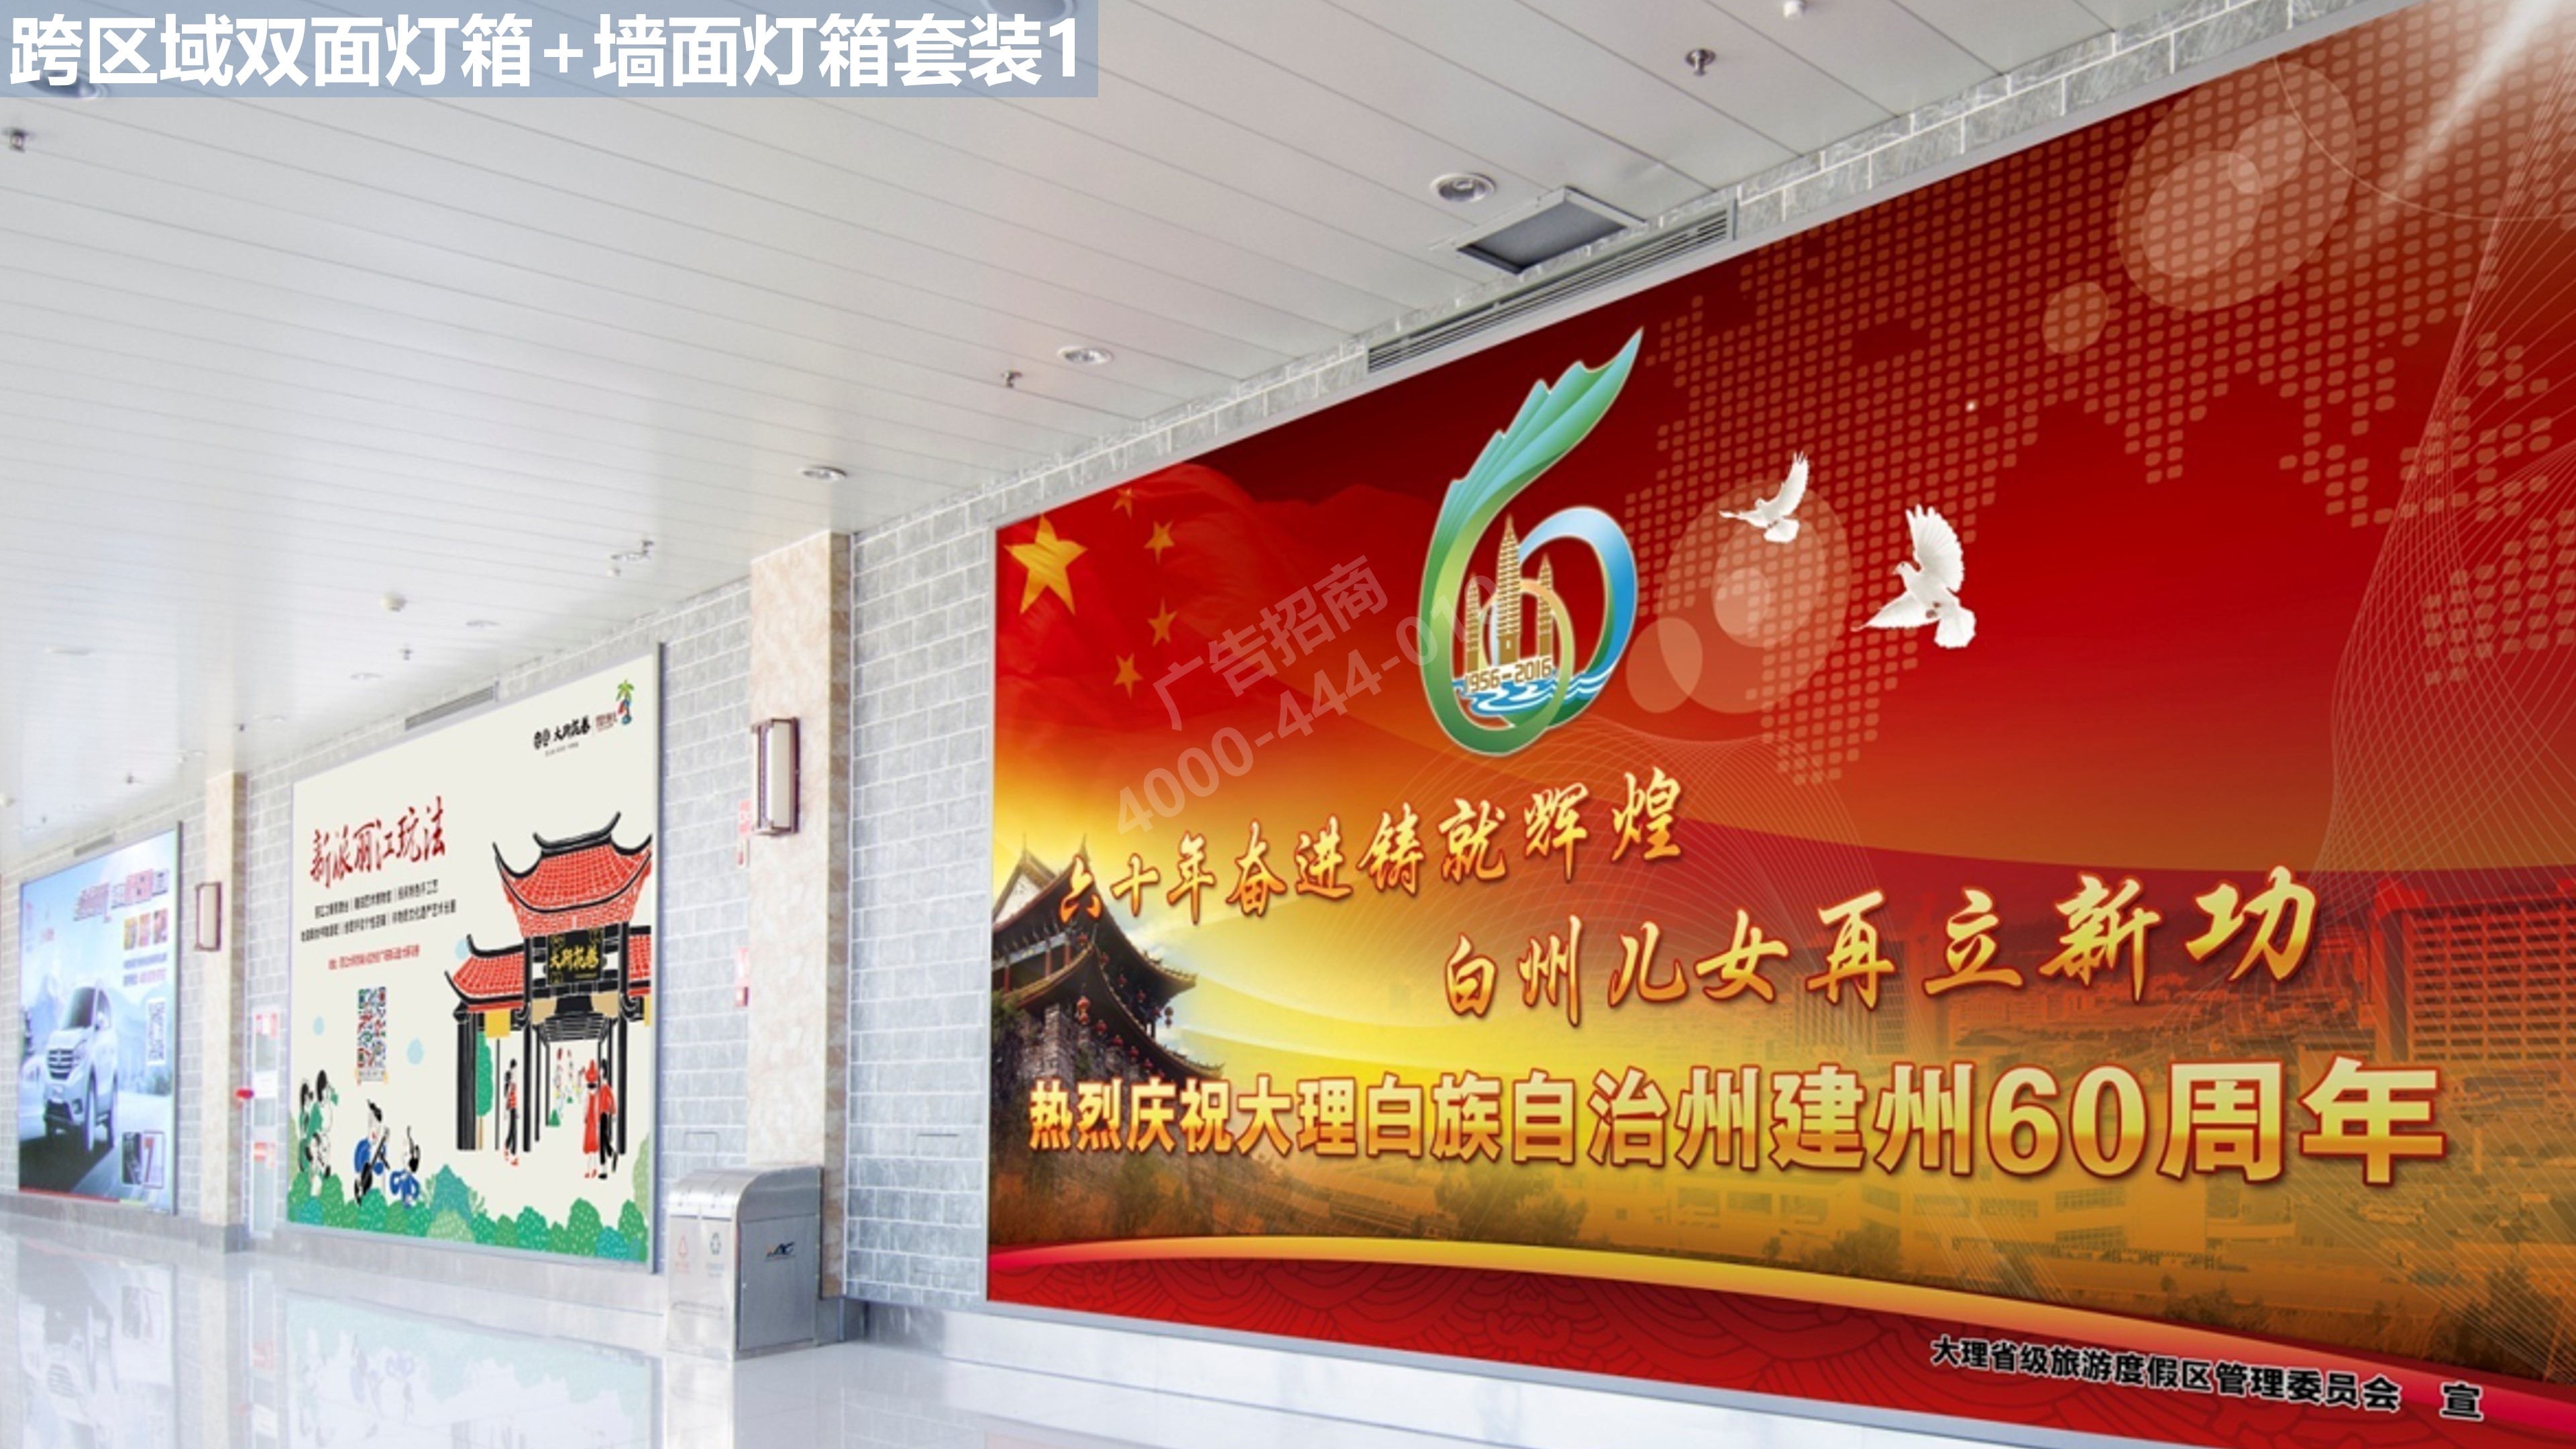 丽江机场跨区域候机广告1